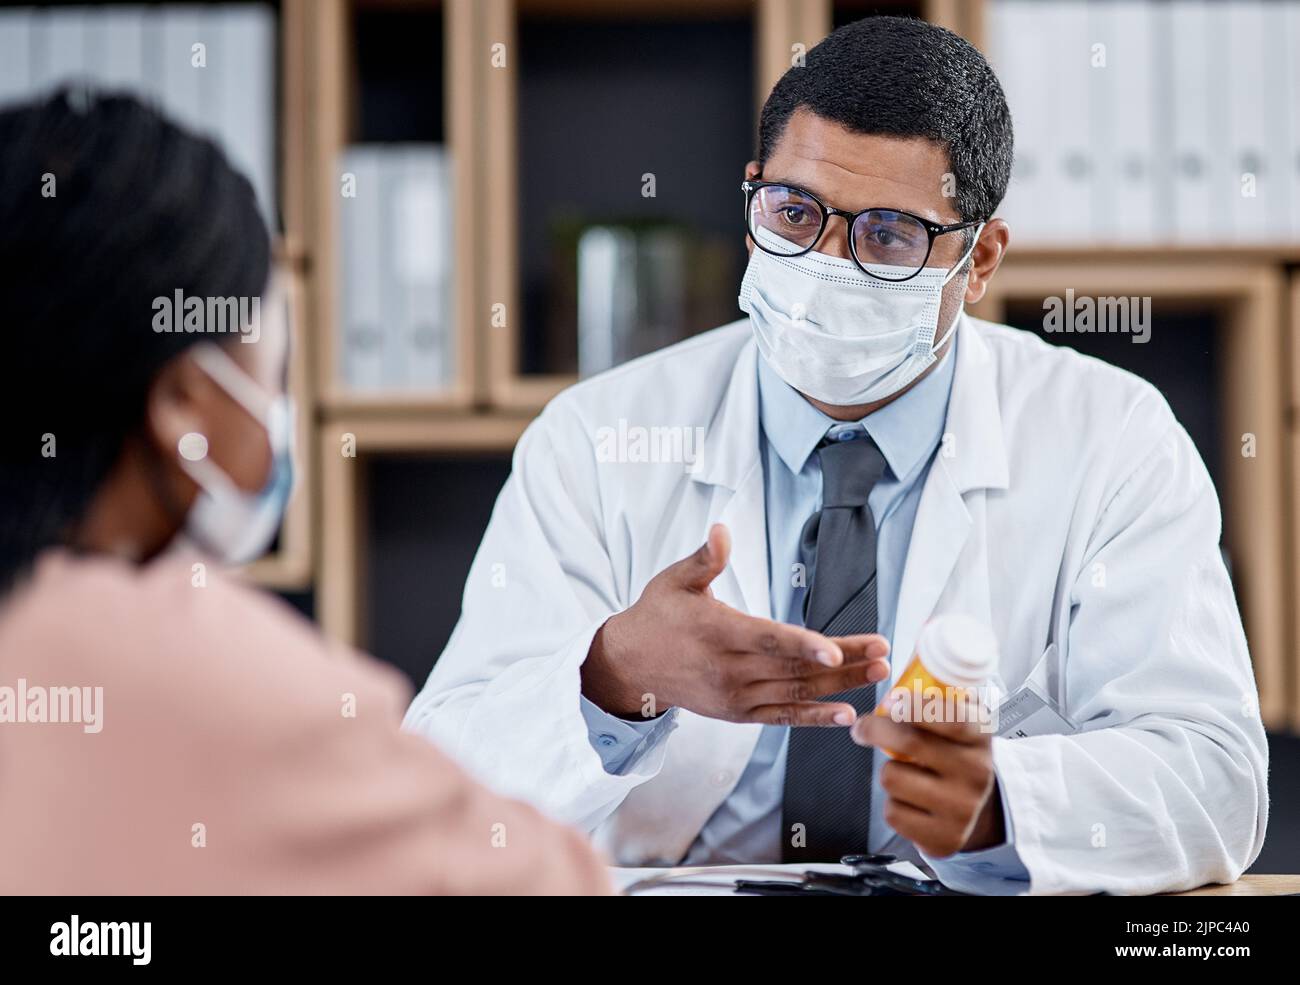 Rendez-vous médical ou médecin consultant un patient pendant la pandémie de covid depuis son bureau. GP masculine aidant un client malade en lui donnant des comprimés Banque D'Images